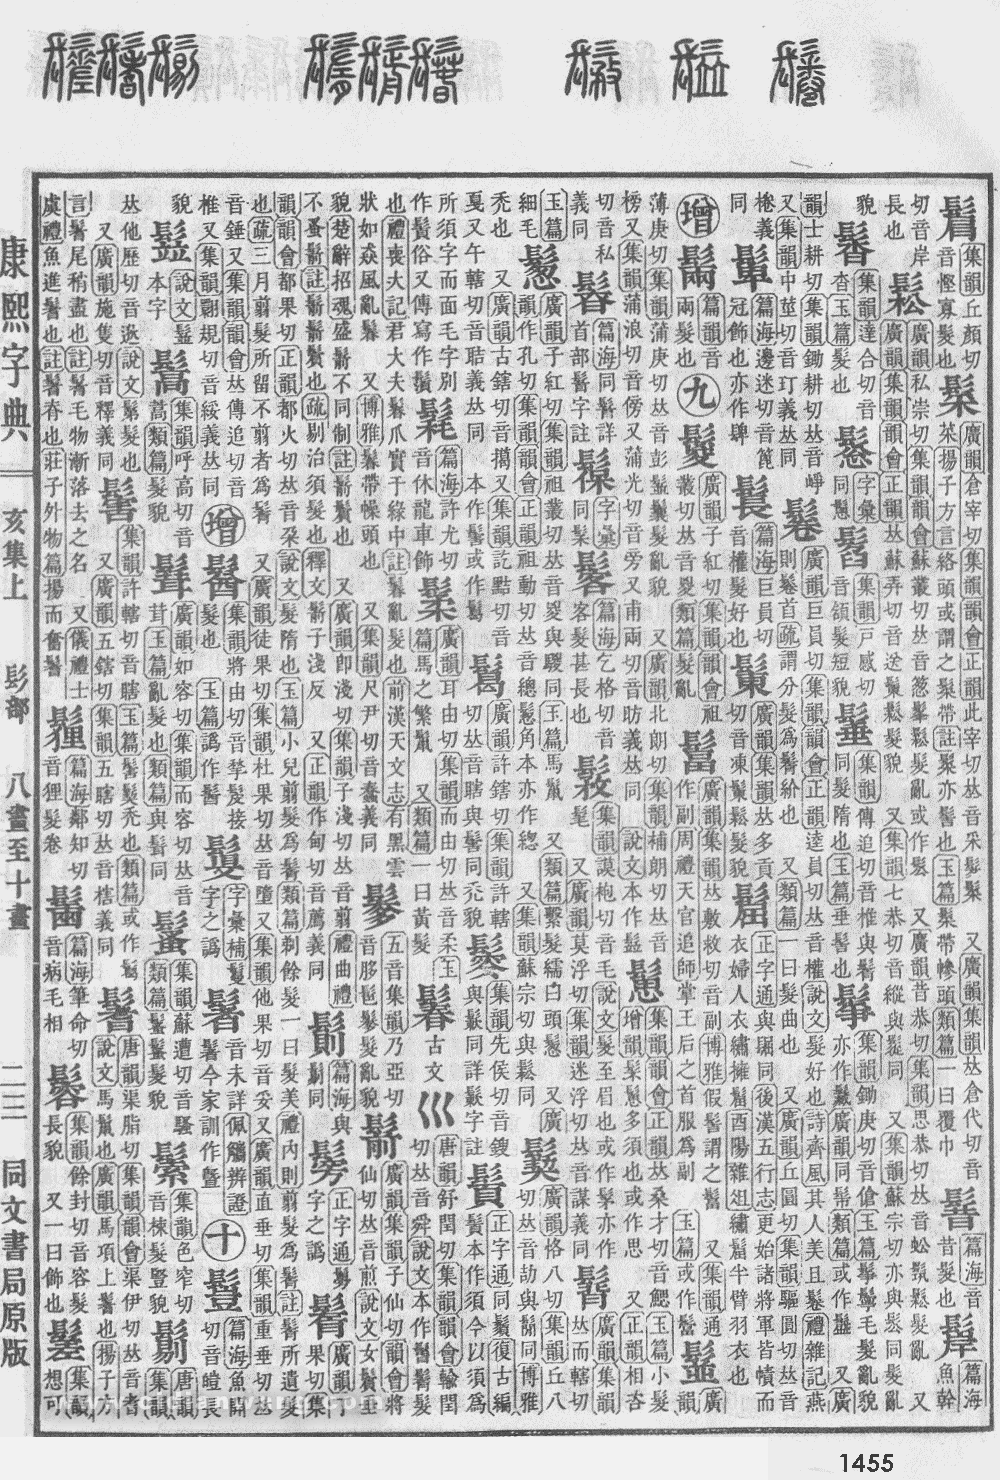 康熙字典掃描版第1455頁